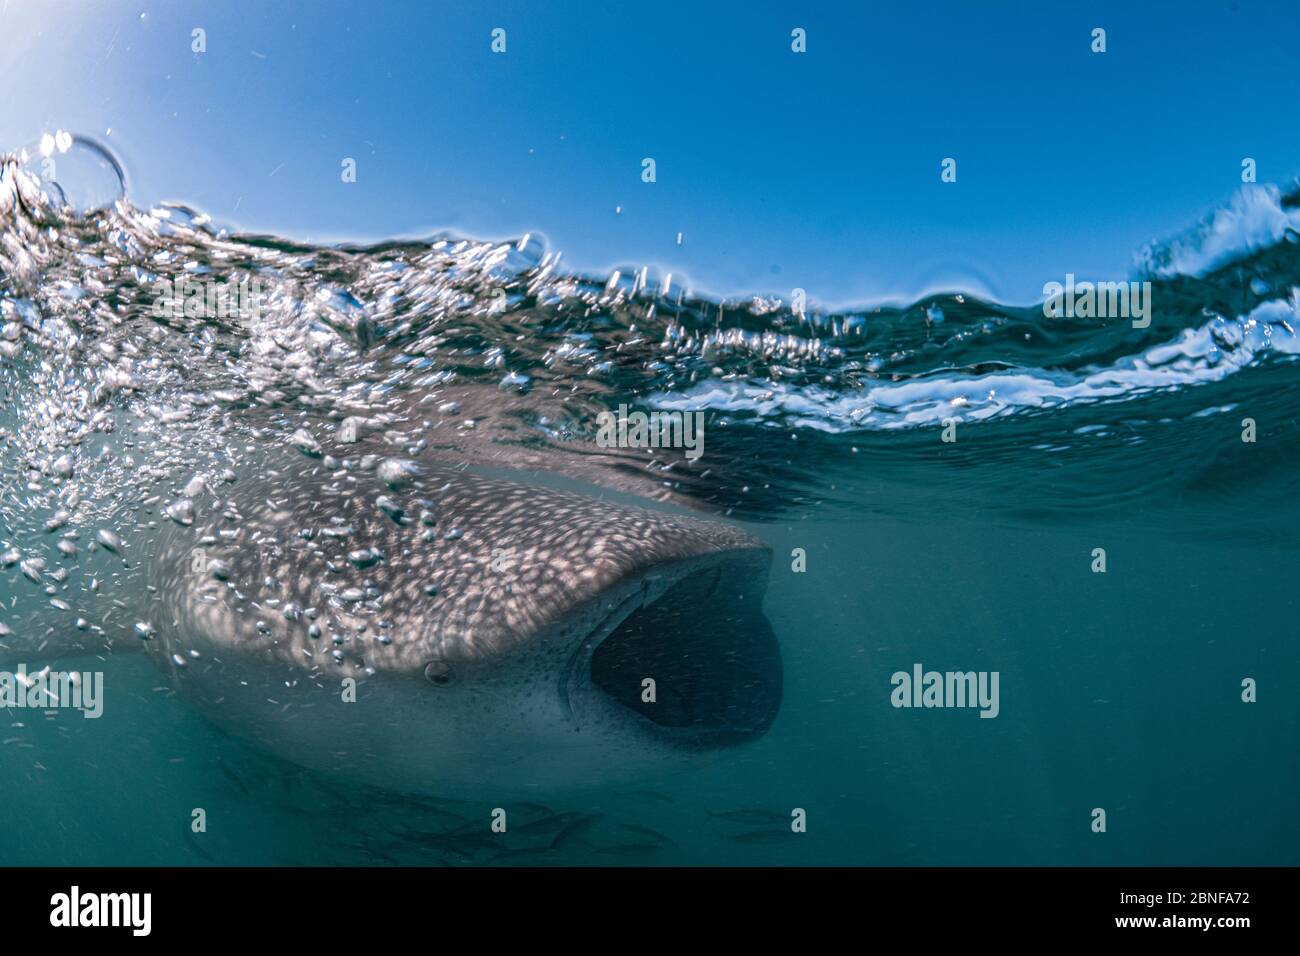 Uno squalo balena giovanile che si nutre appena sotto la superficie Foto Stock